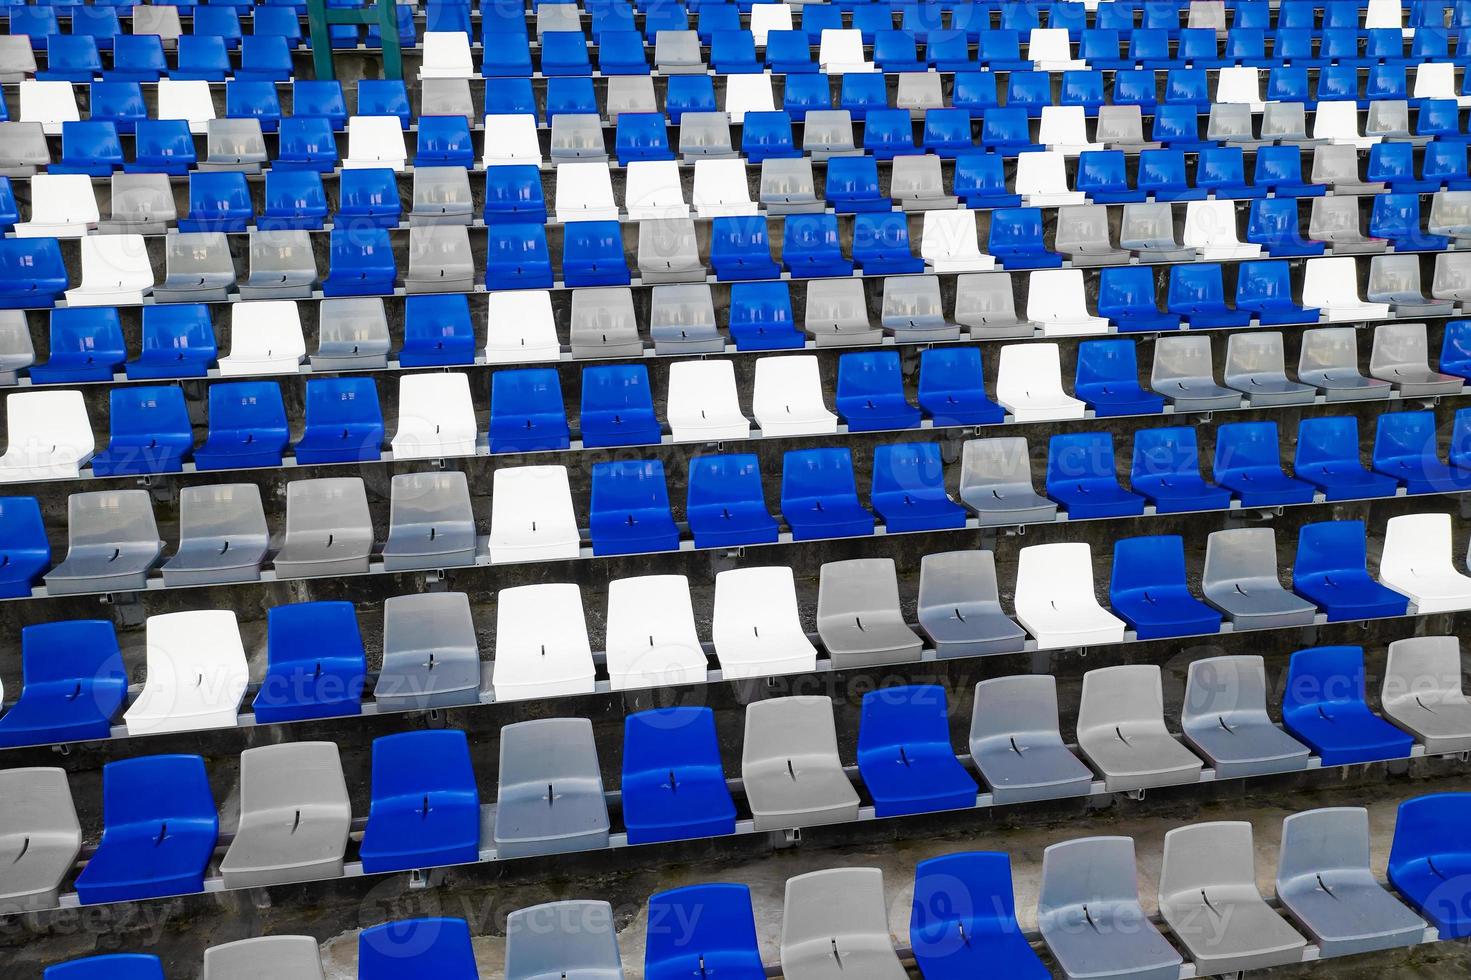 Stadien Amphitheater leere Plastiksitze im Stadion. viele leere plätze für zuschauer auf den tribünen für fußballfans und andere sportarten im freien. foto